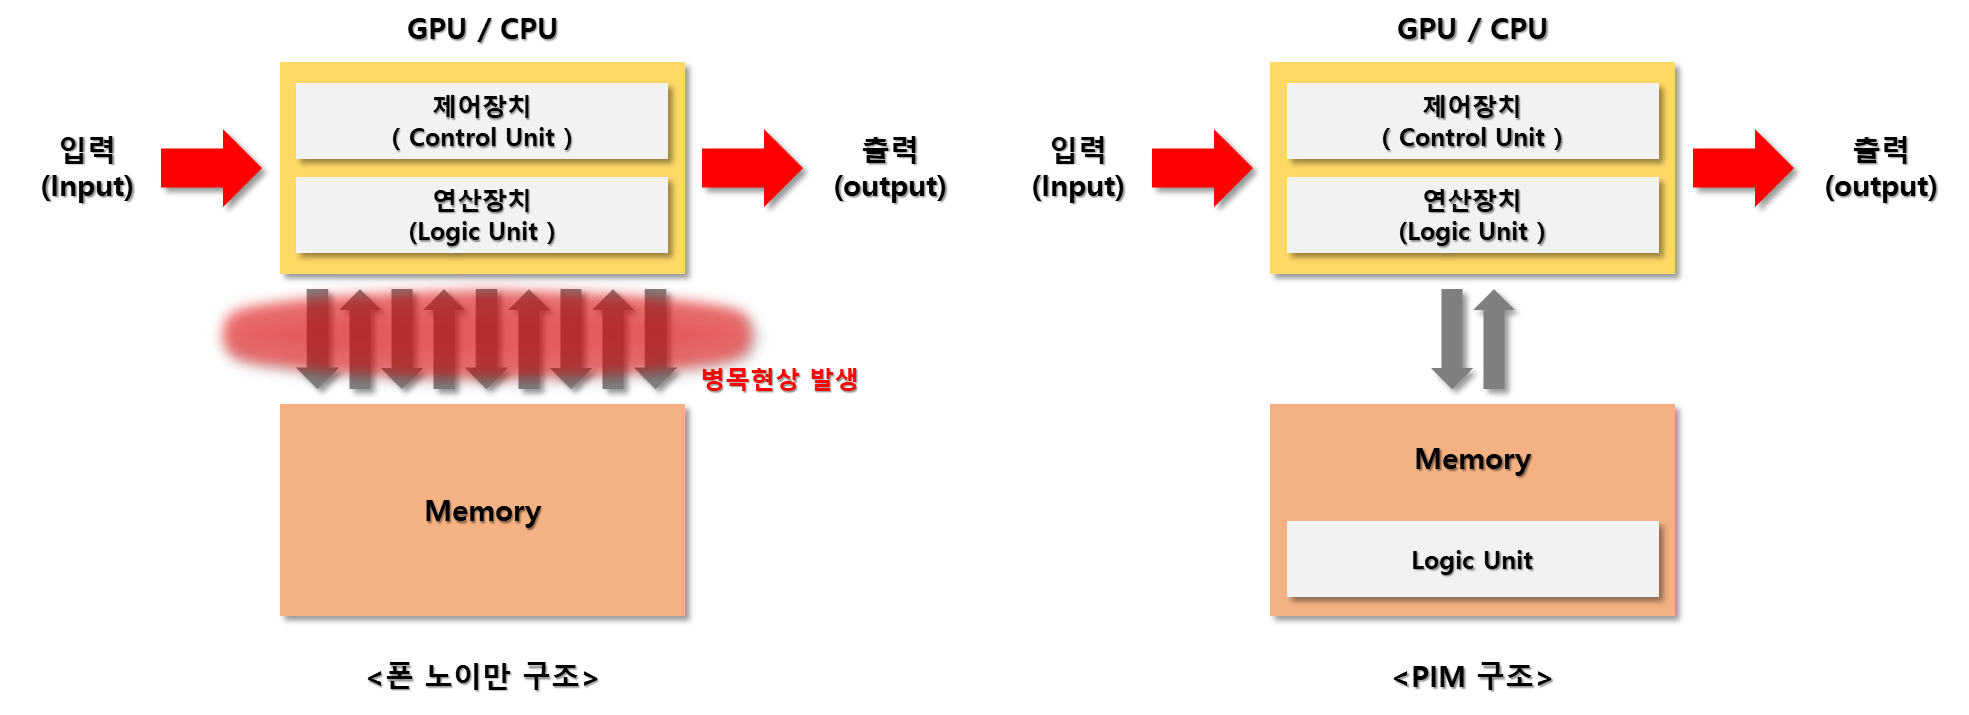 기존 폰노이만 구조의 컴퓨터와 PIM 구조 방식의 컴퓨터 개념도 입니다.